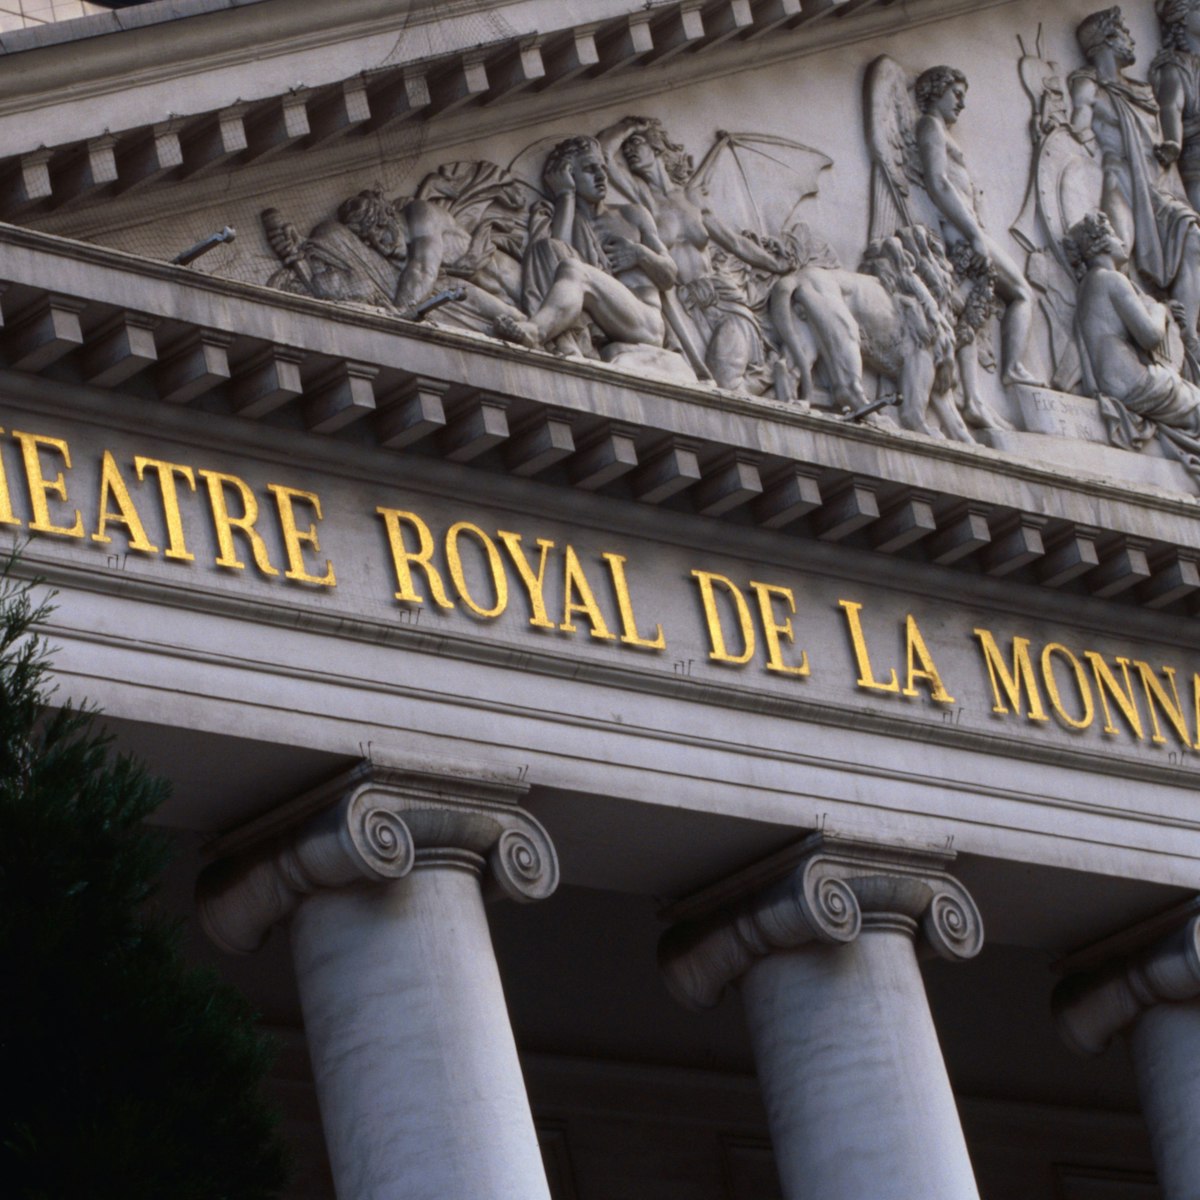 Theatre Royal de la Monnaie.